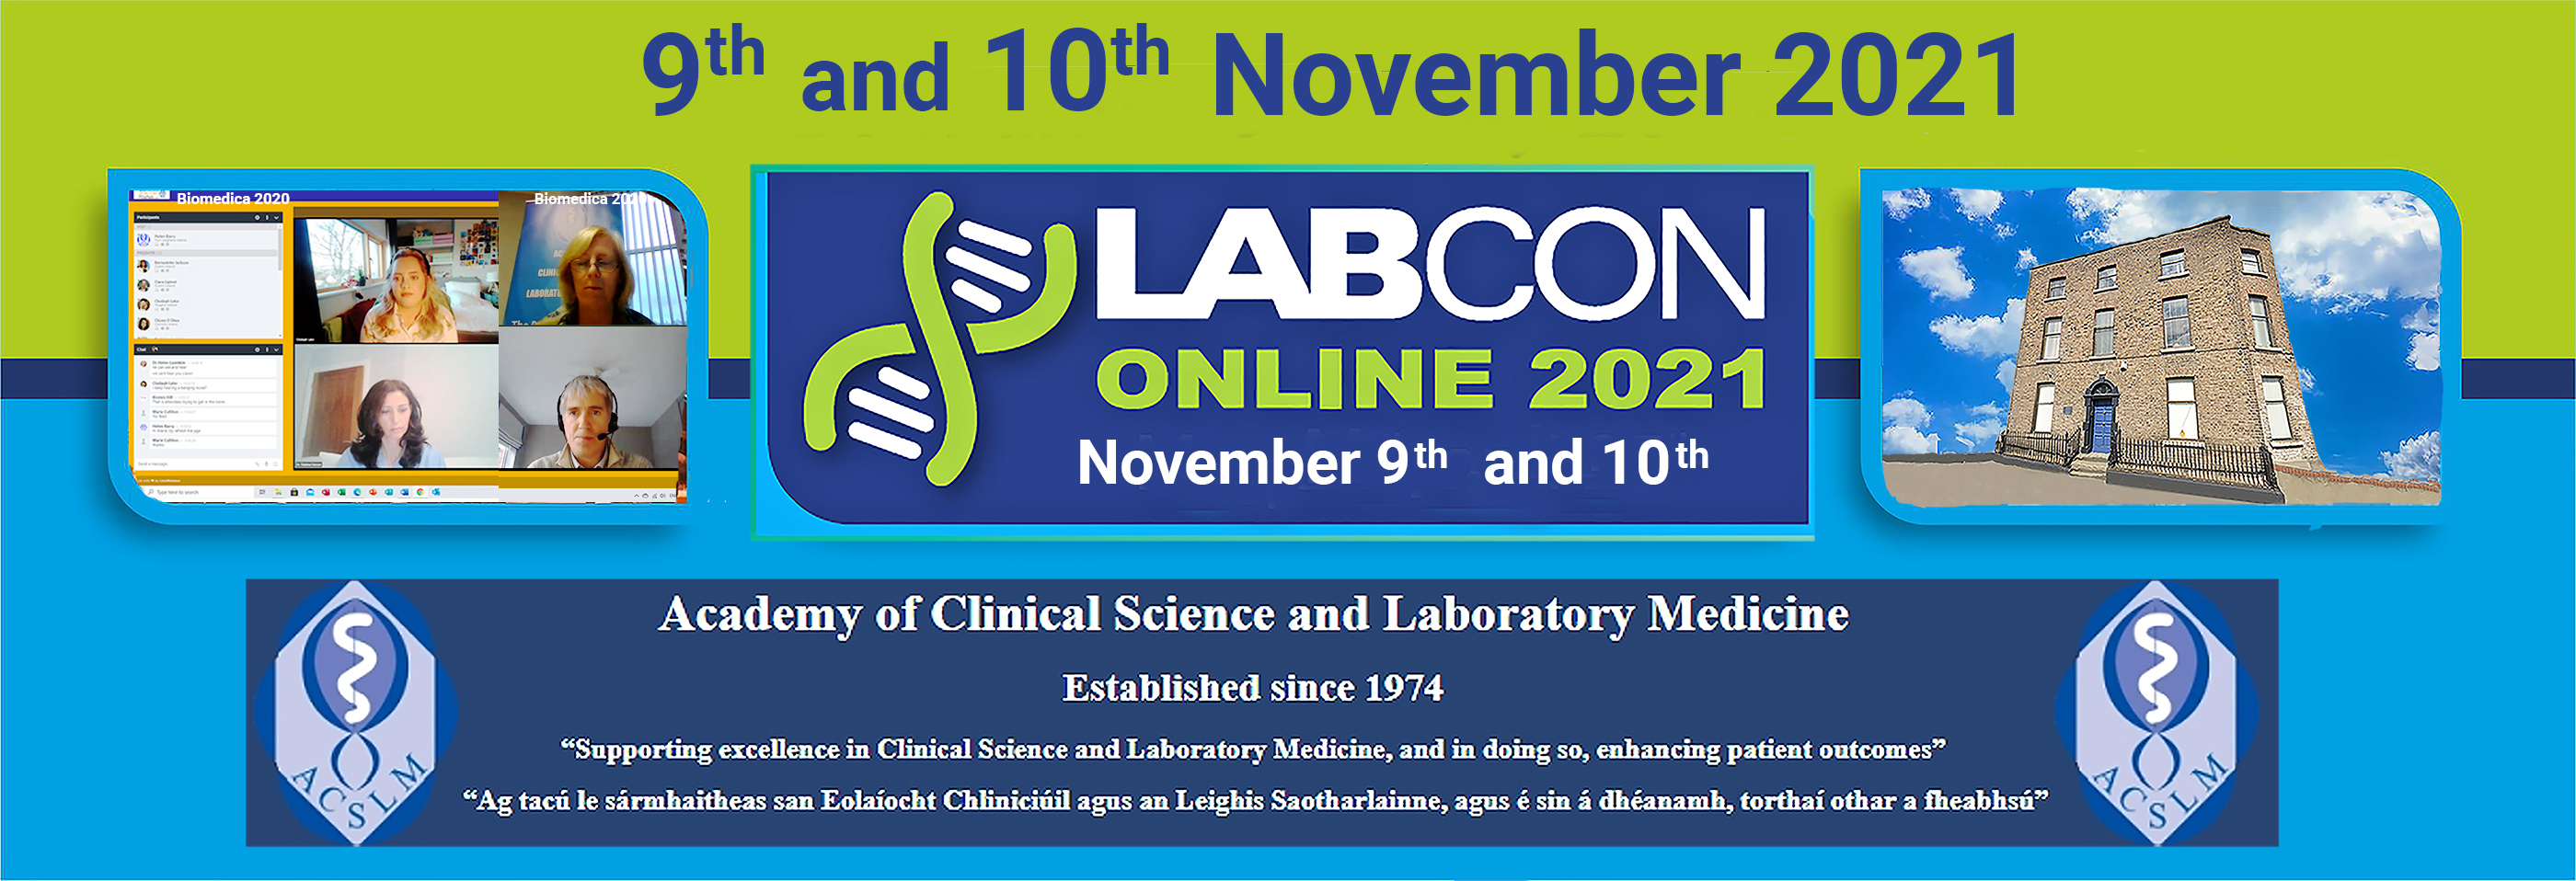 Labcon November 2021